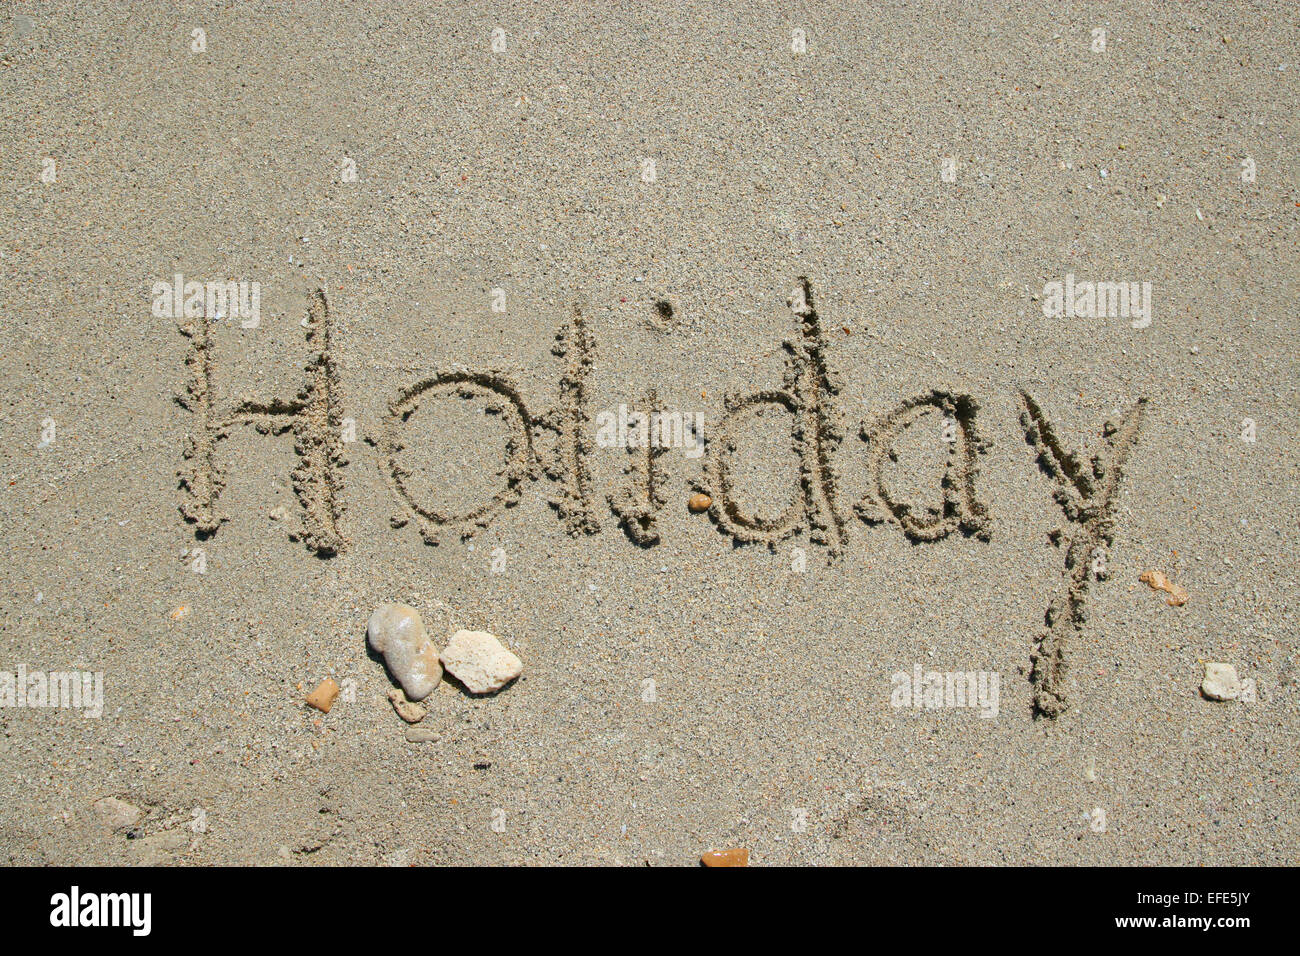 Strand Holiday Stock Photo